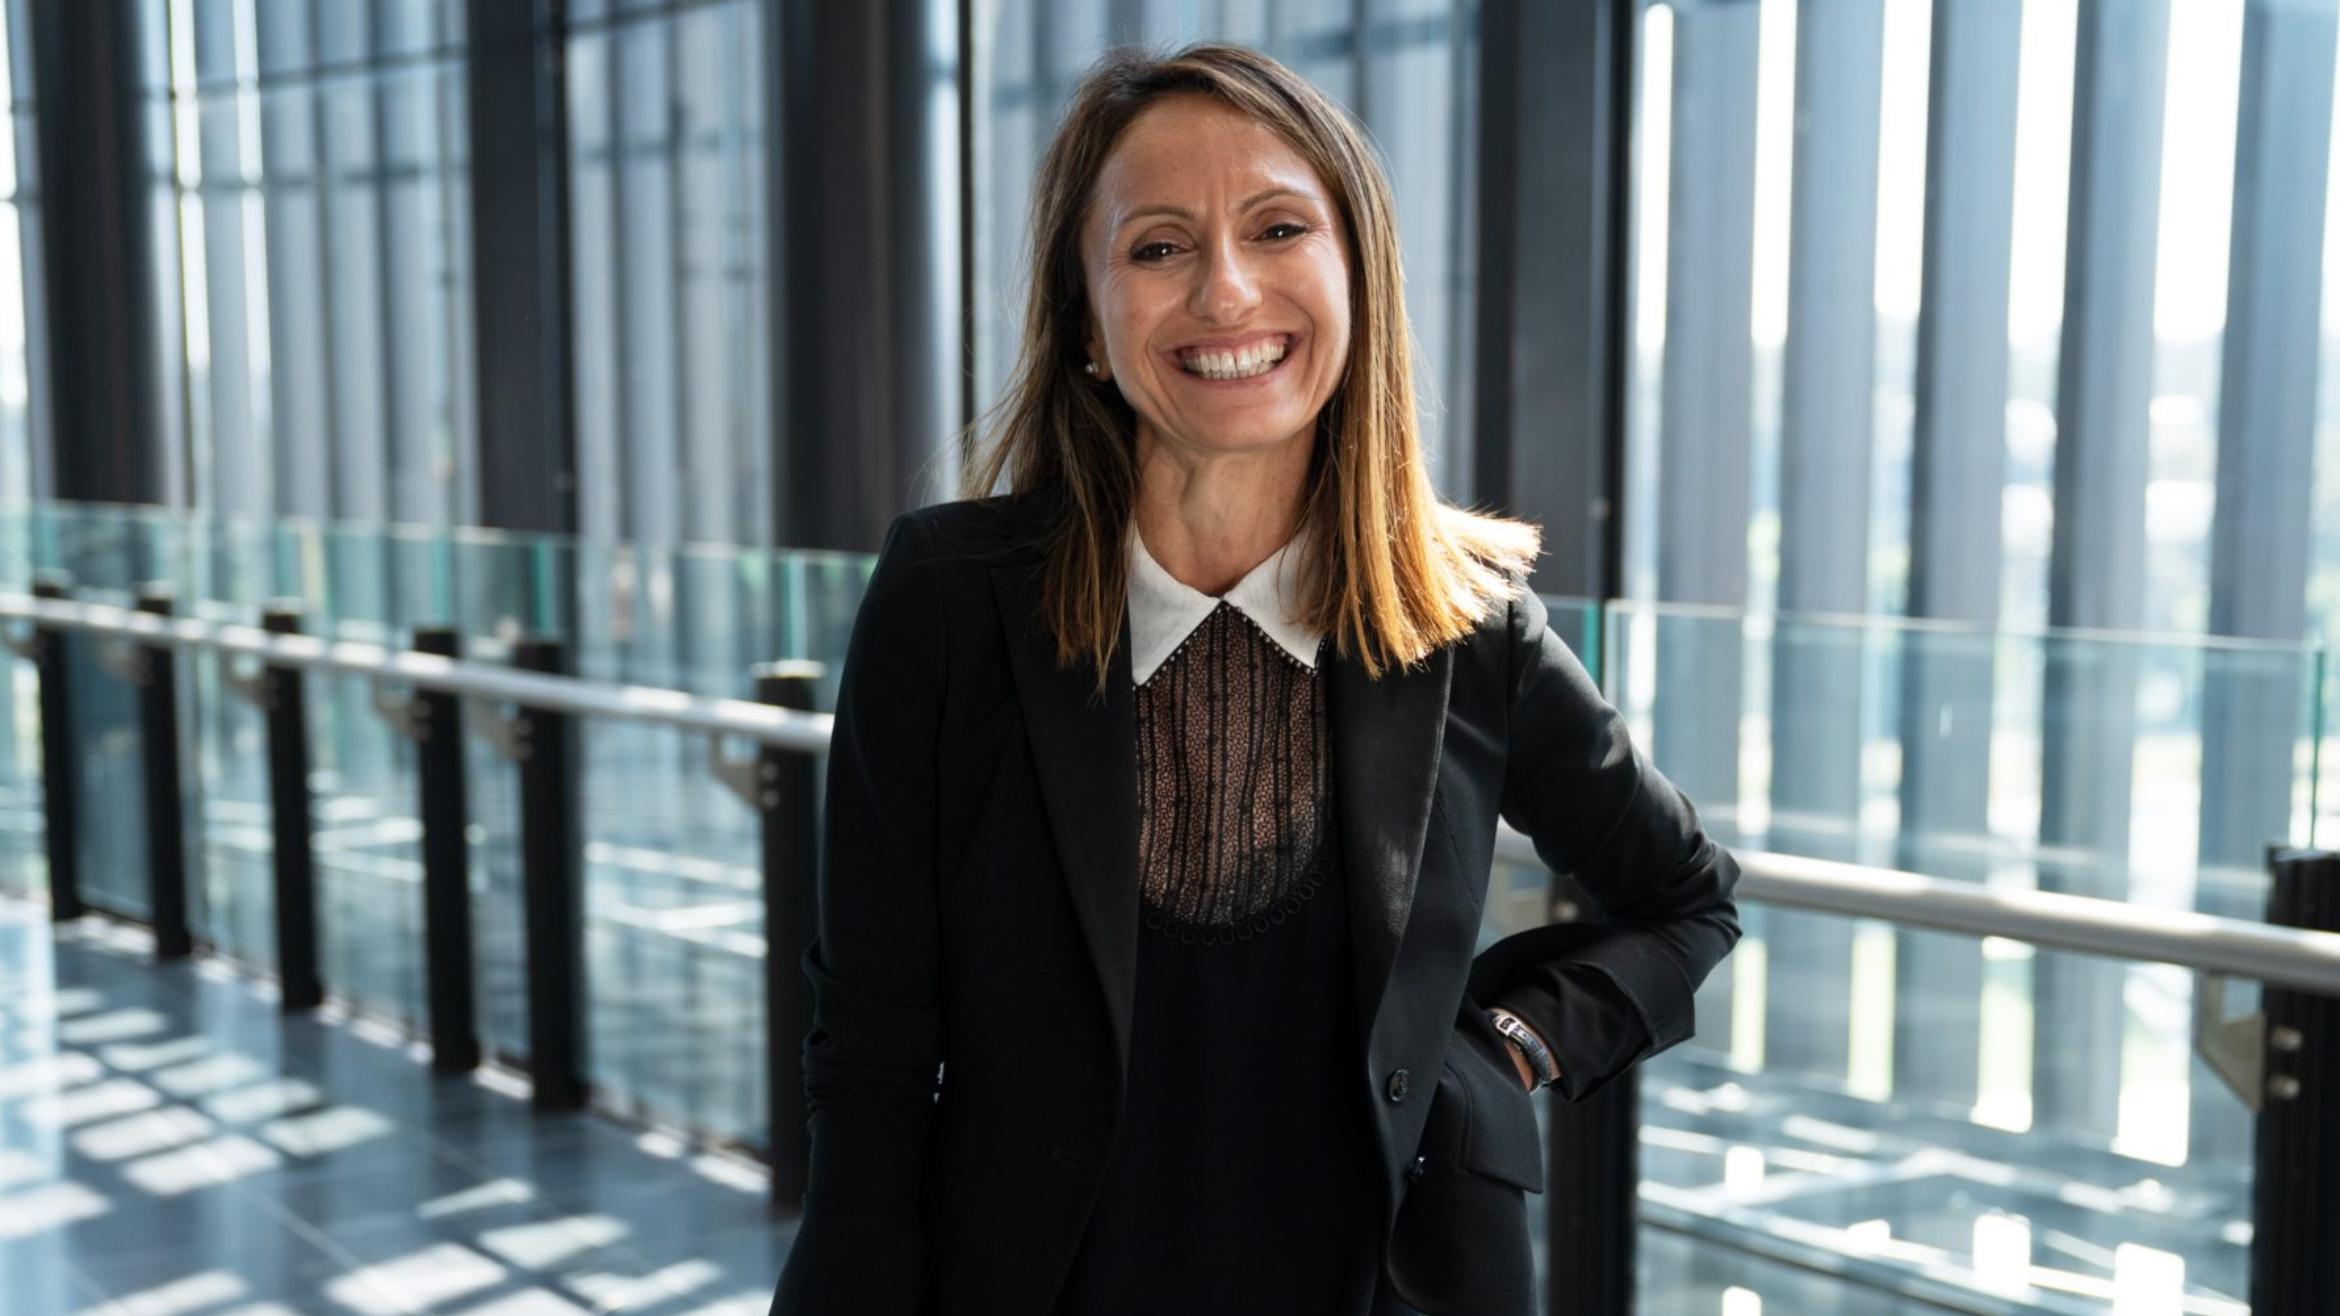 Alice Mascia verantwortet das DAZN-Geschäft in Deutschland, Österreich und der Schweiz –